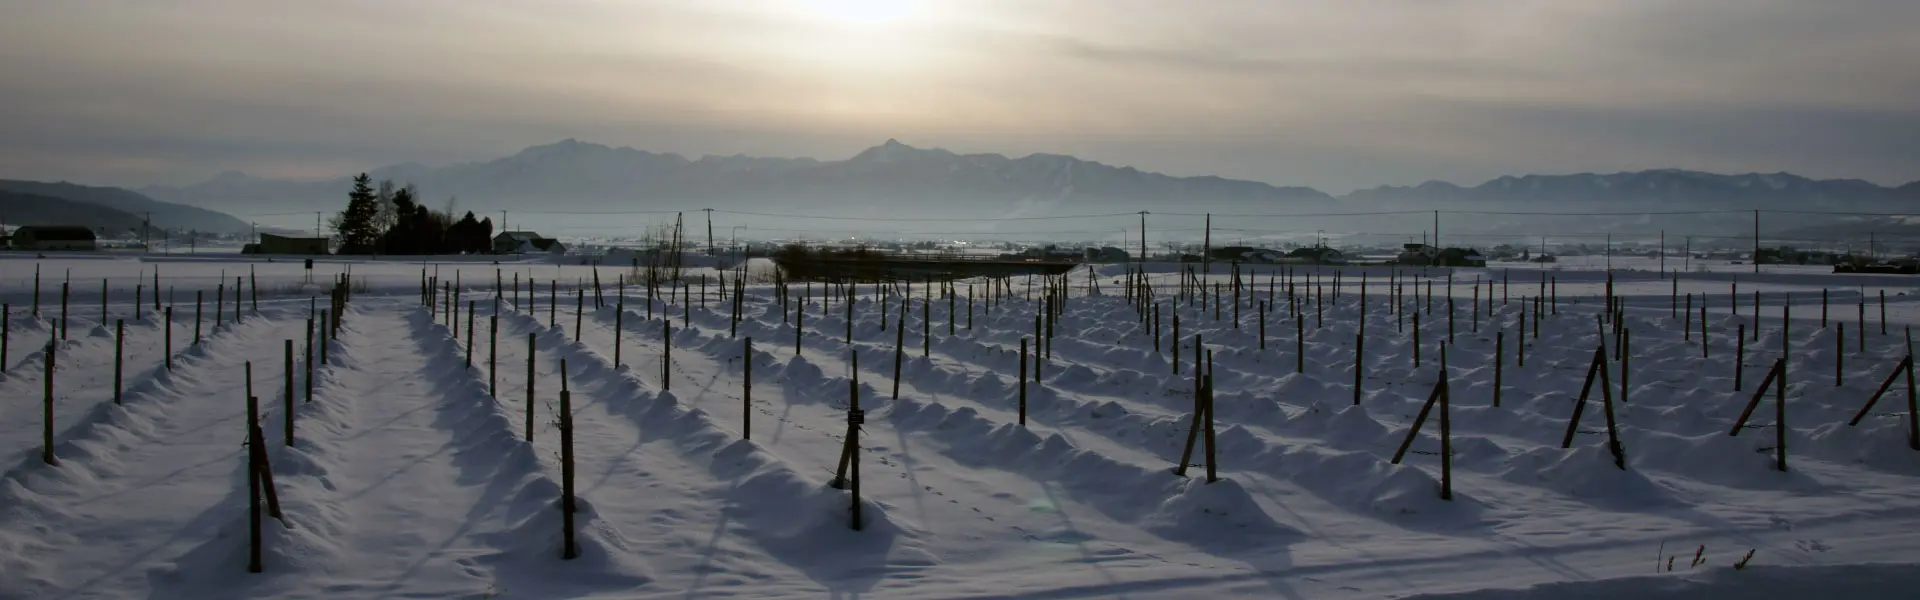 冬のワイン用ぶどう畑